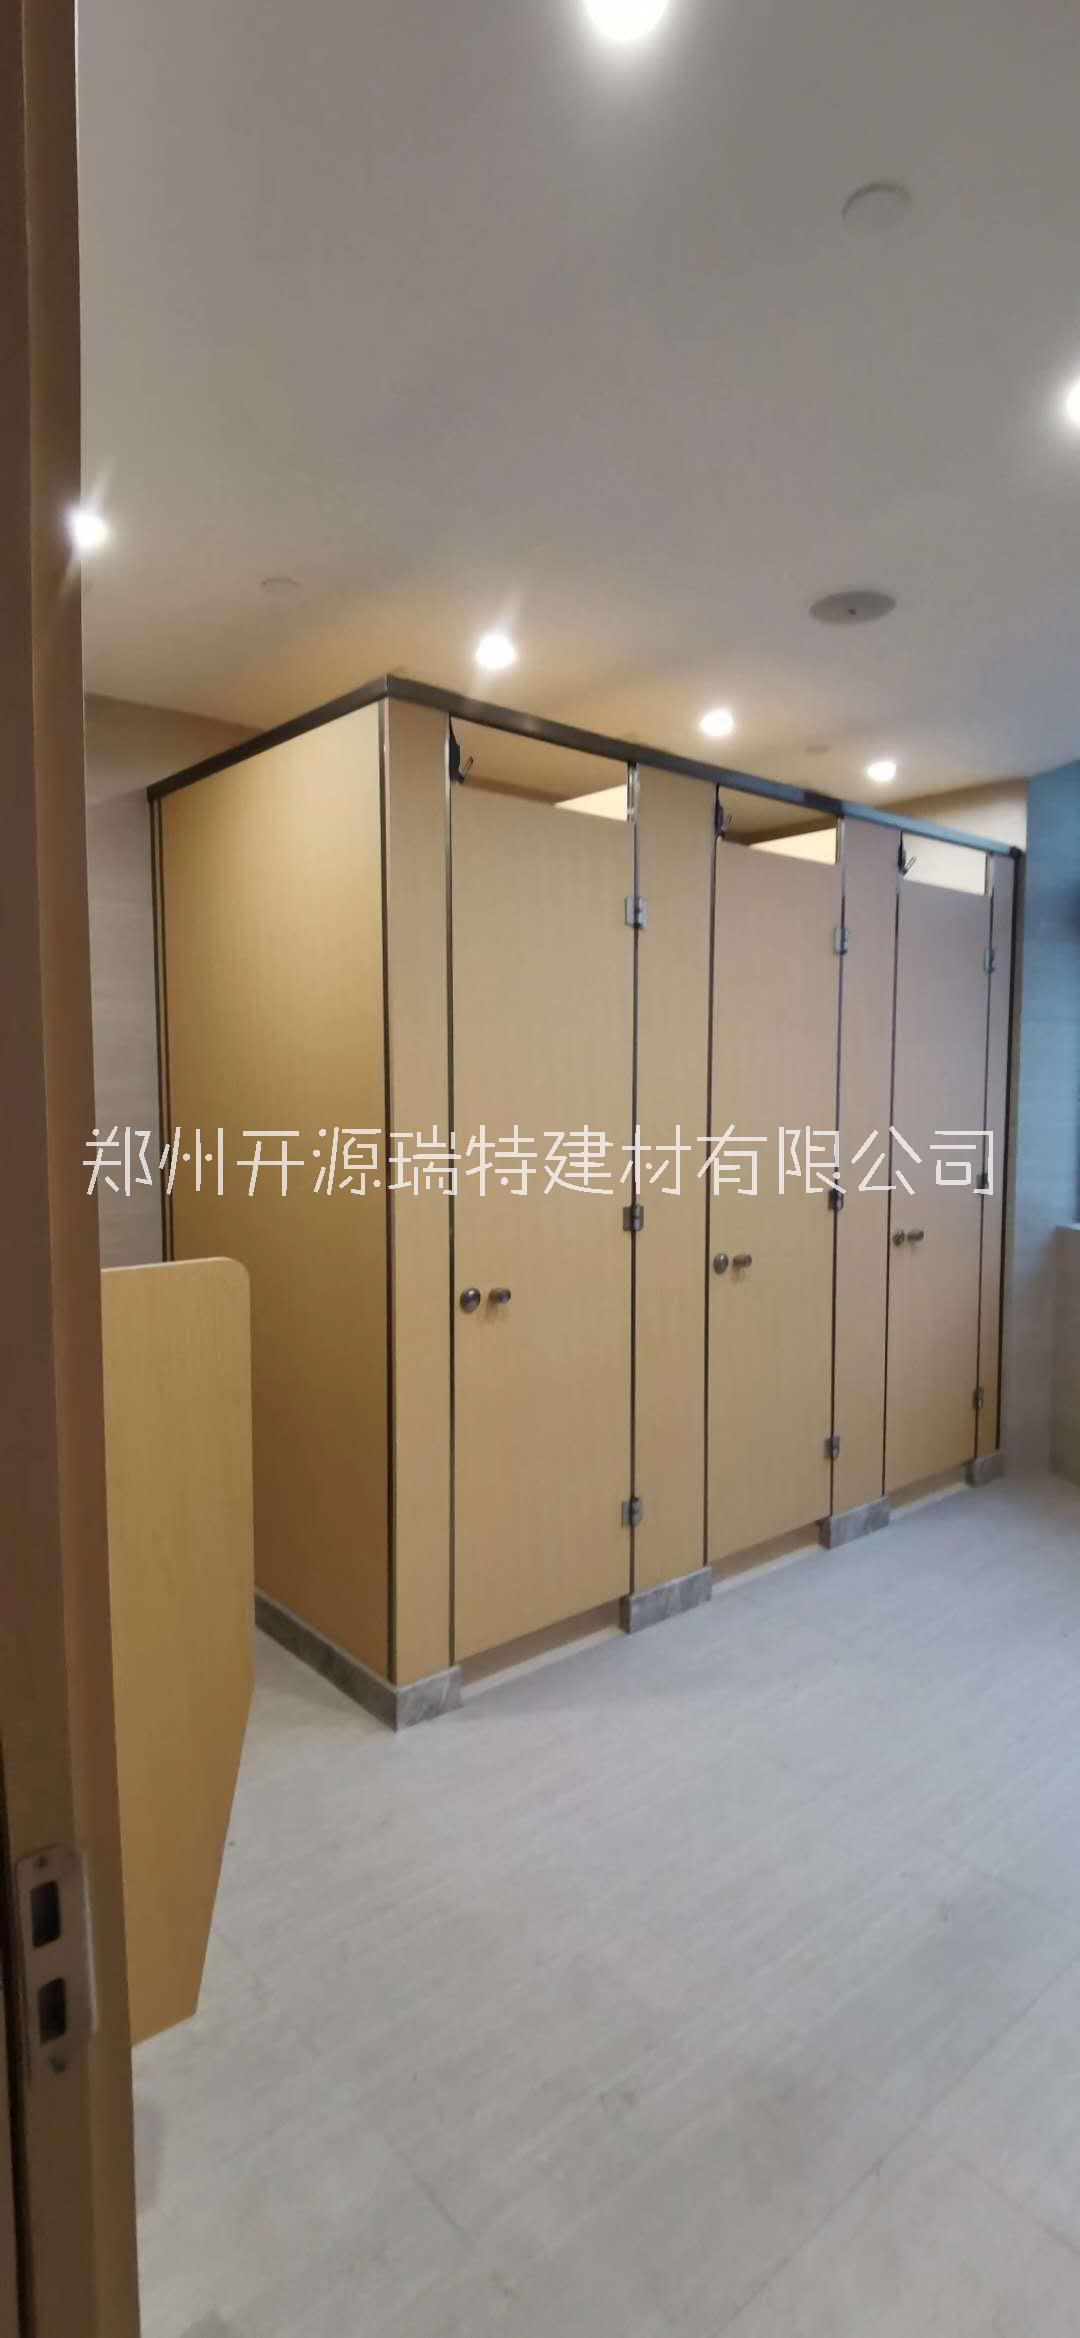 河南公共卫生间隔断多重优惠 郑州开源卫生间隔断 公共厕所隔断图片